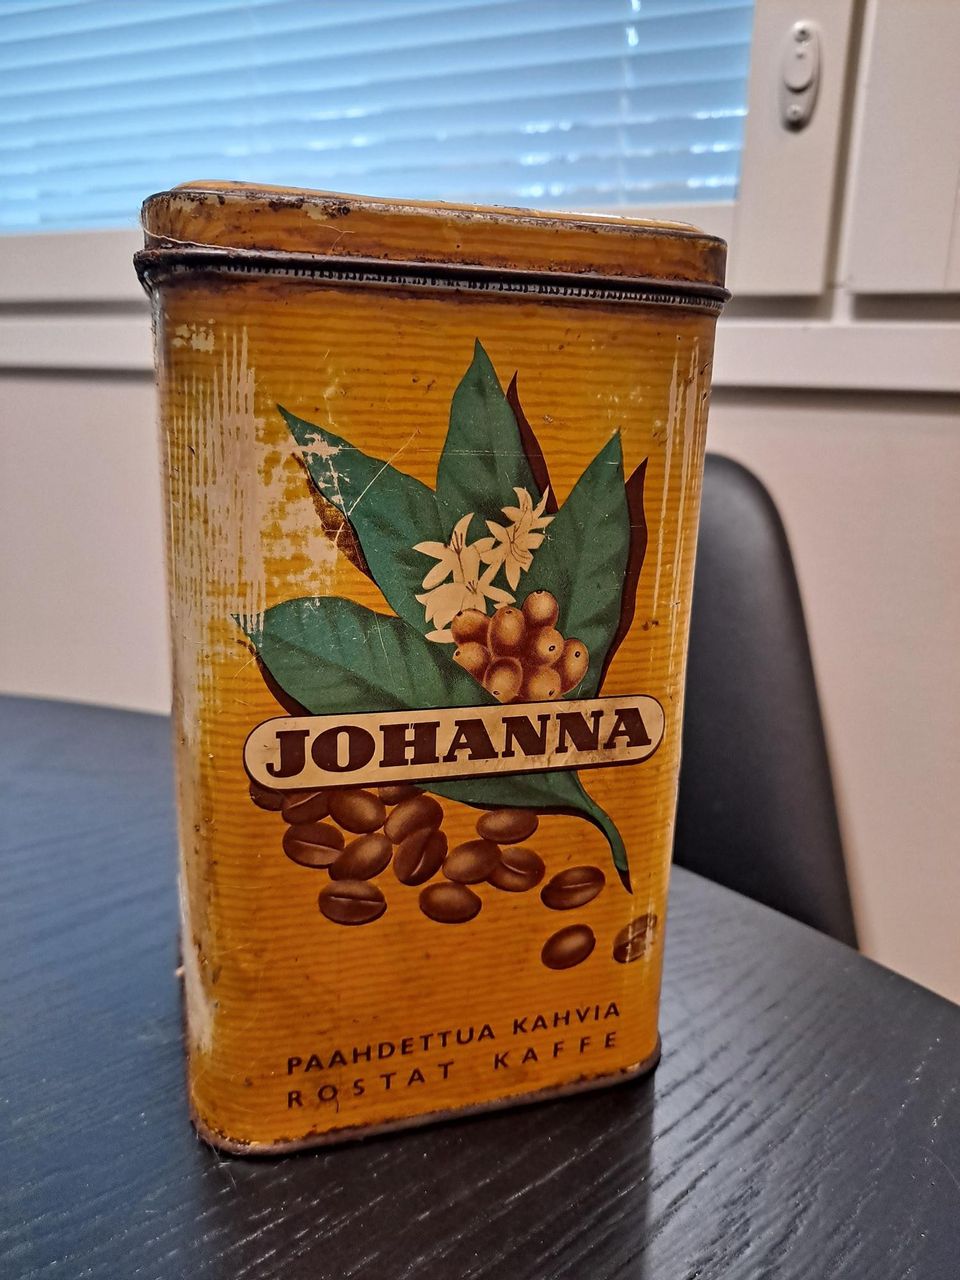 Johanna kahvipurkki